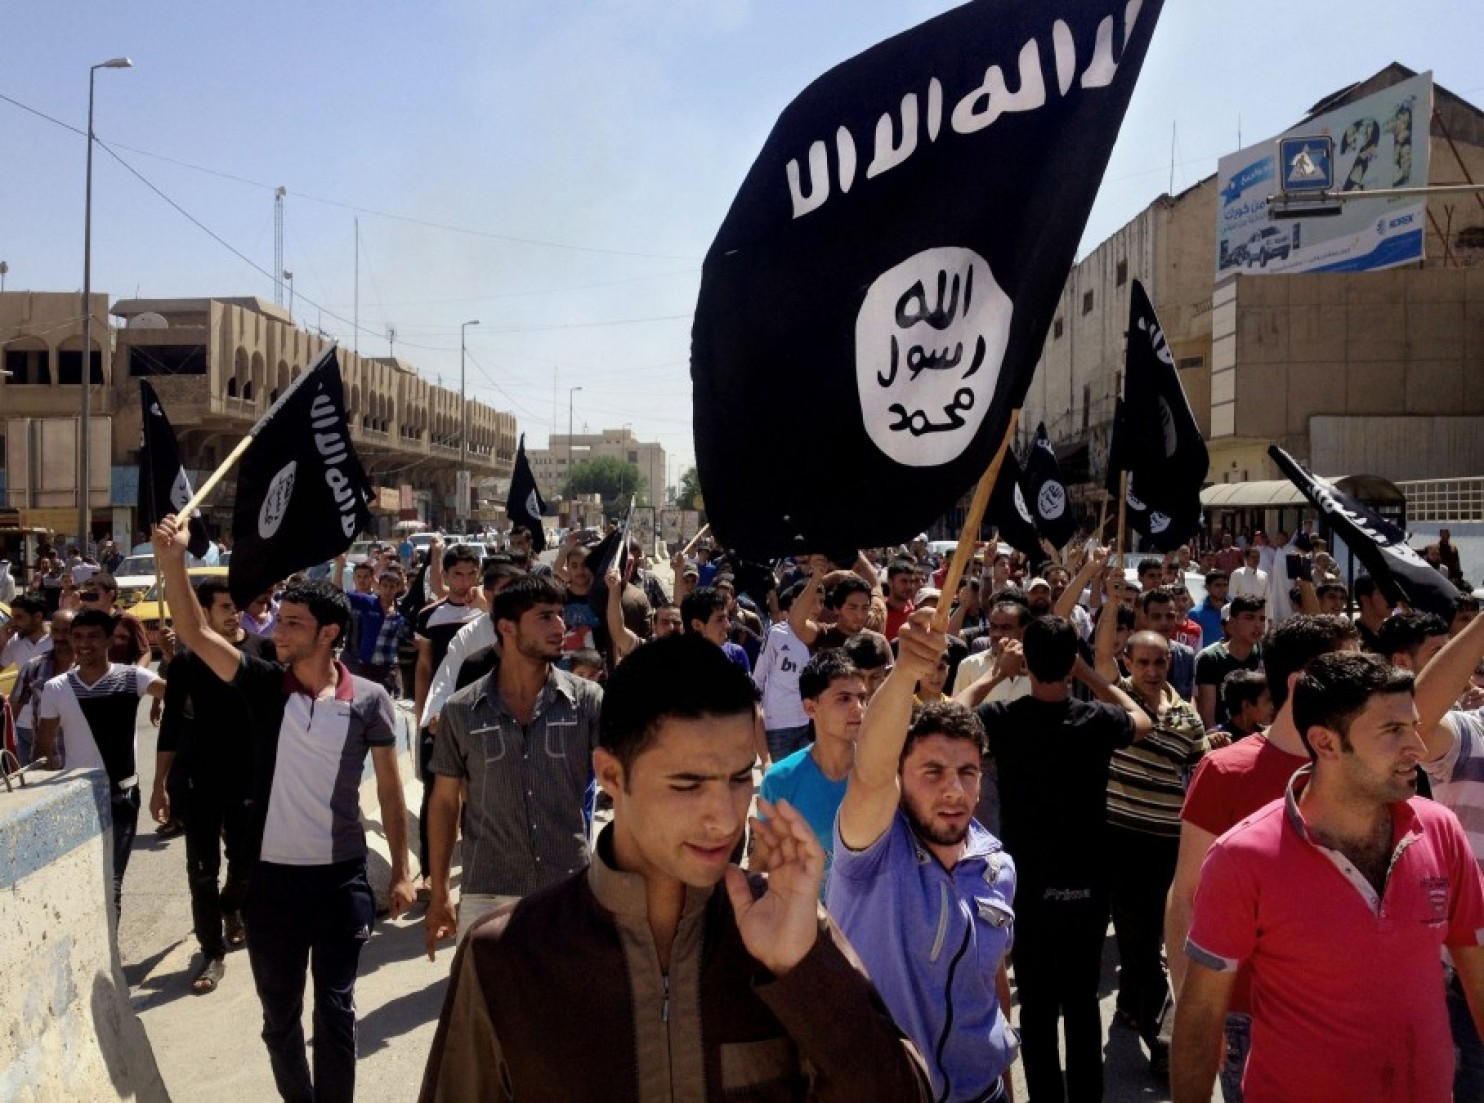 كيف ينظر العراقيون السنة الى تنظيم “داعش”